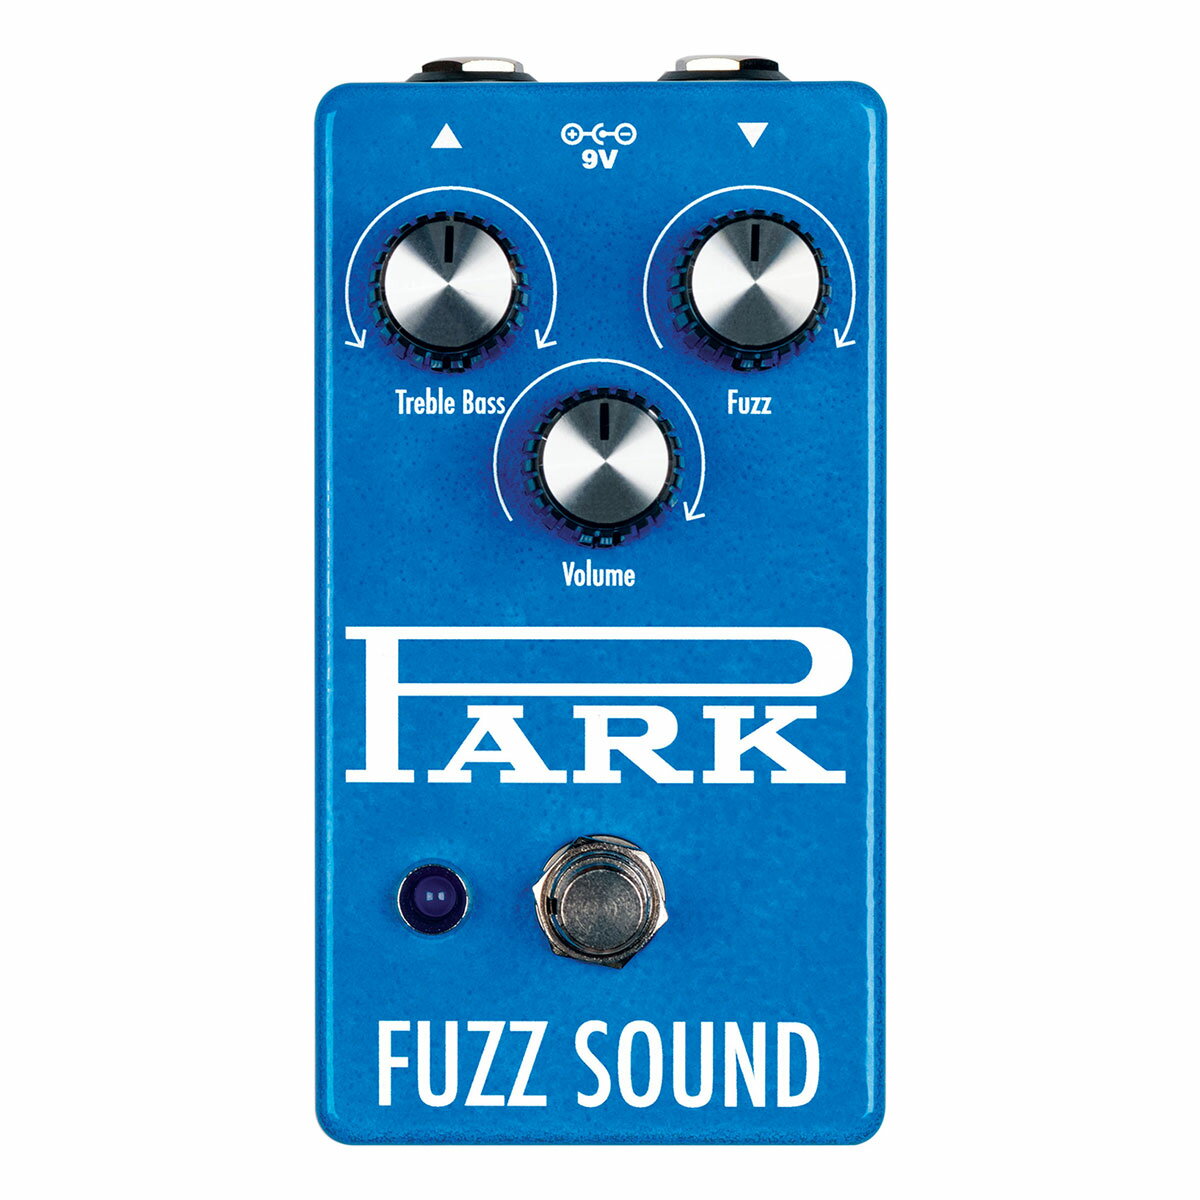 Park Fuzz Soundを忠実に再現 このPark Fuzz SoundはアースクエイカーデバイセスとPark Amplifiersが協力して、オリジナルのPark Fuzz Soundの音を忠実に再現し、なおかつ現代のプレイヤーに対応できる様な改良がされております。 ●ノイズ低減の為メタルフィルムの抵抗とキャパシターを使用 ●NOSのゲルマニウムトランジスターのマッチングを一つ一つ手作業で選定する事によって安定した音色を実現 ●オリジナルより約2倍のファズの量 ●小さい筐体でトゥルーバイパススイッチとLED搭載 ●通常のパワーサプライで使用可能 ■商品スペック タイプ：ビンテージファズ 消費電流：3 mA 電源：9V センターマイナス 2.1mm アダプター 本体サイズ：121 x 64 x 57 mm ※画像はサンプルです。